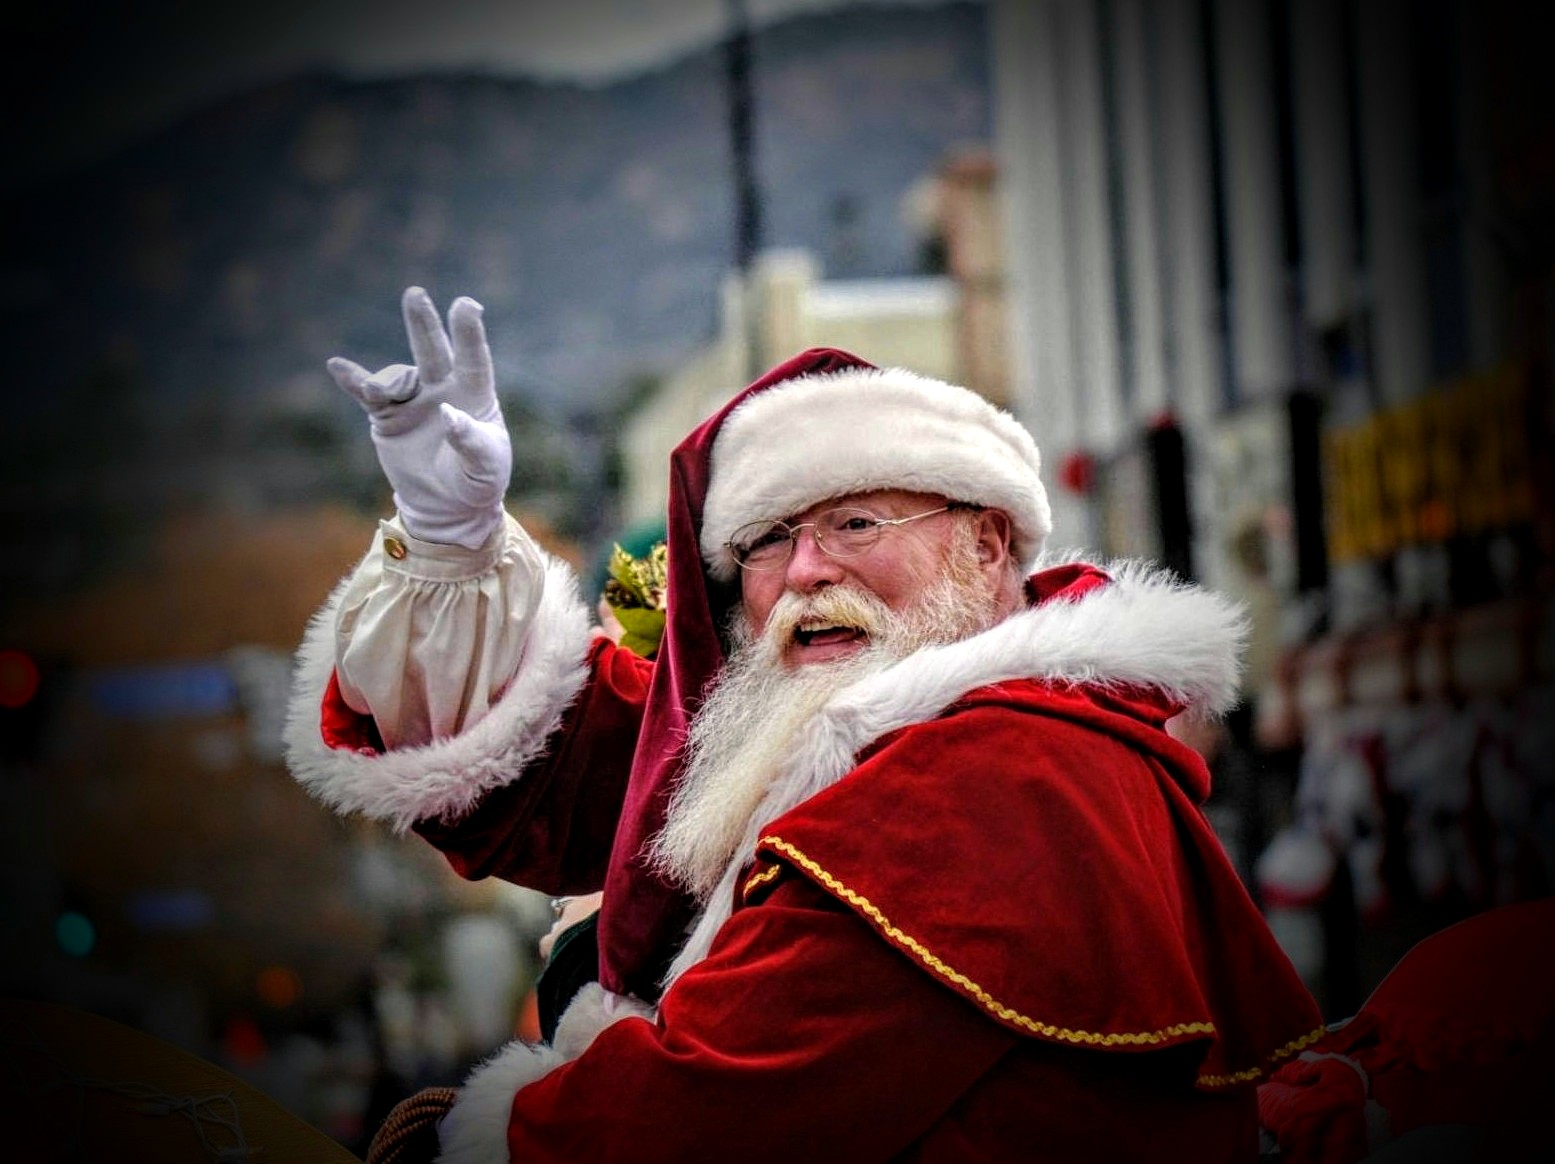 Santa Claus visiting Chino Valley Library!